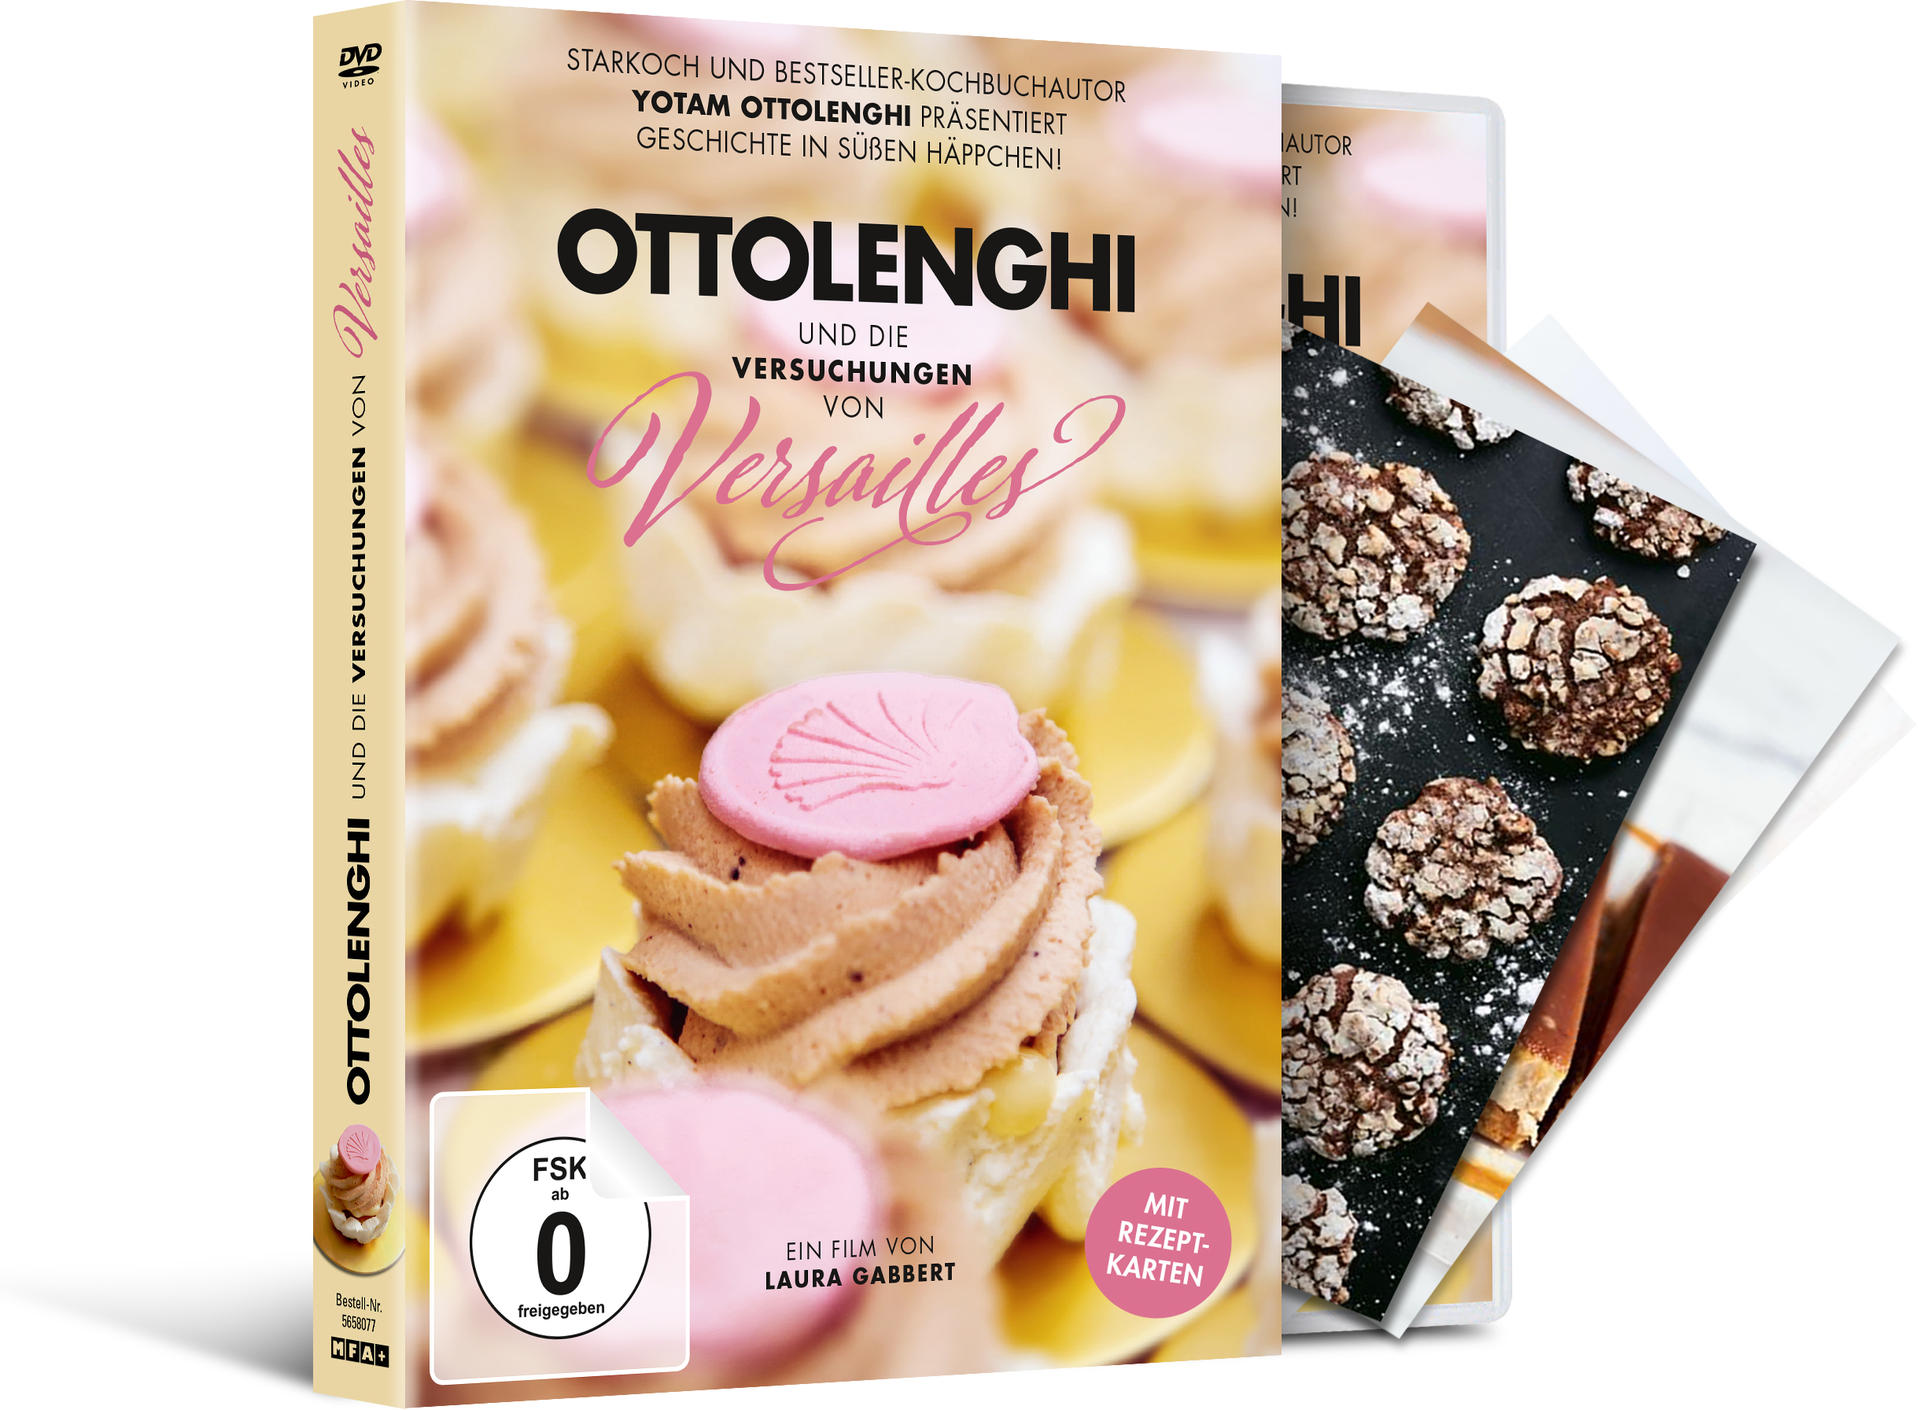 Ottolenghi und Versuchungen von die Versailles DVD